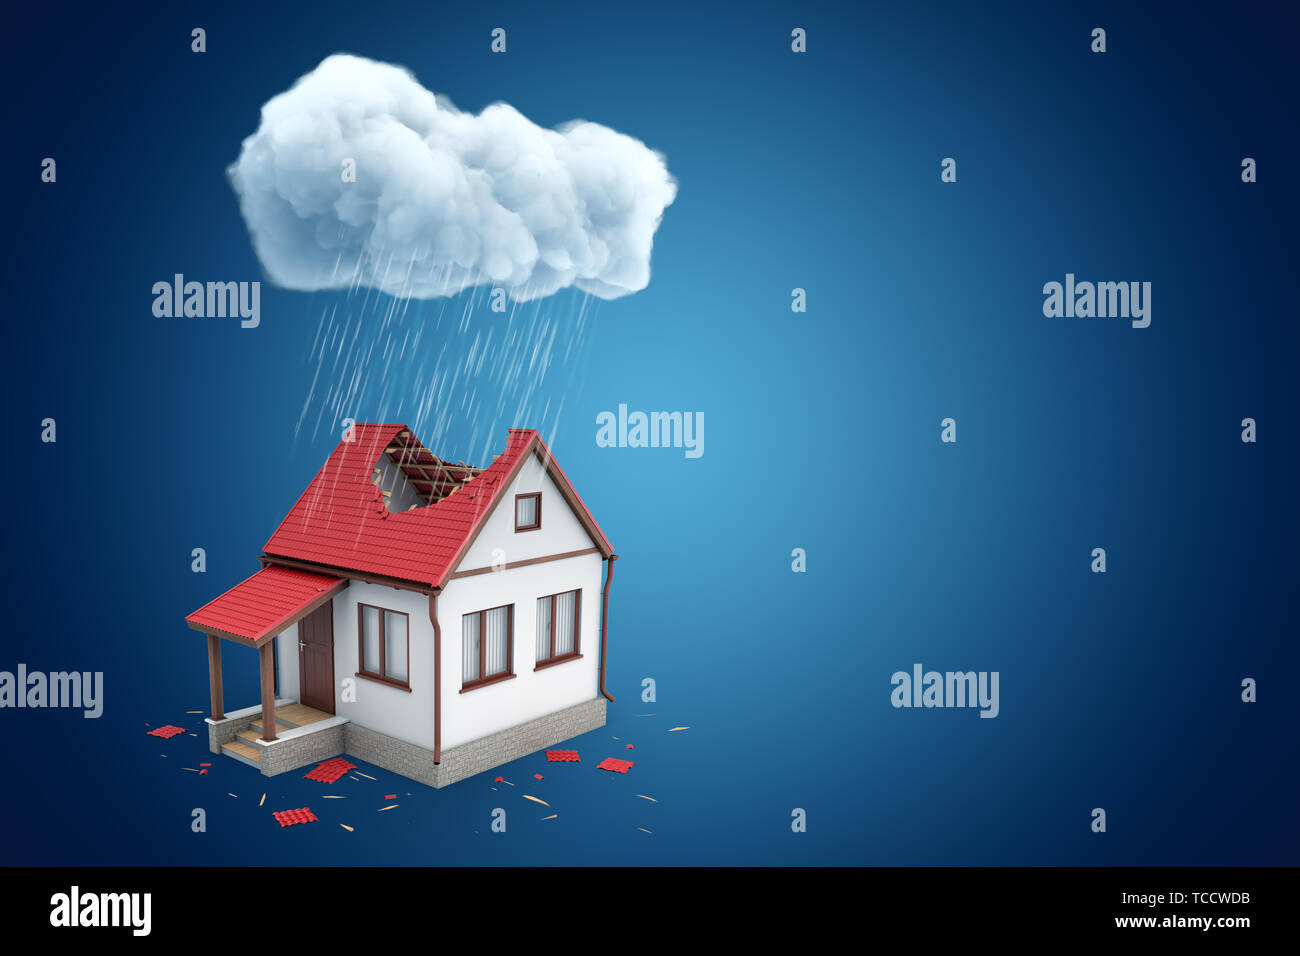 Le rendu 3D de la petite maison individuelle de grand trou dans le toit, en vertu de l'article nuage pluvieux, sur fond bleu avec copie espace. Banque D'Images